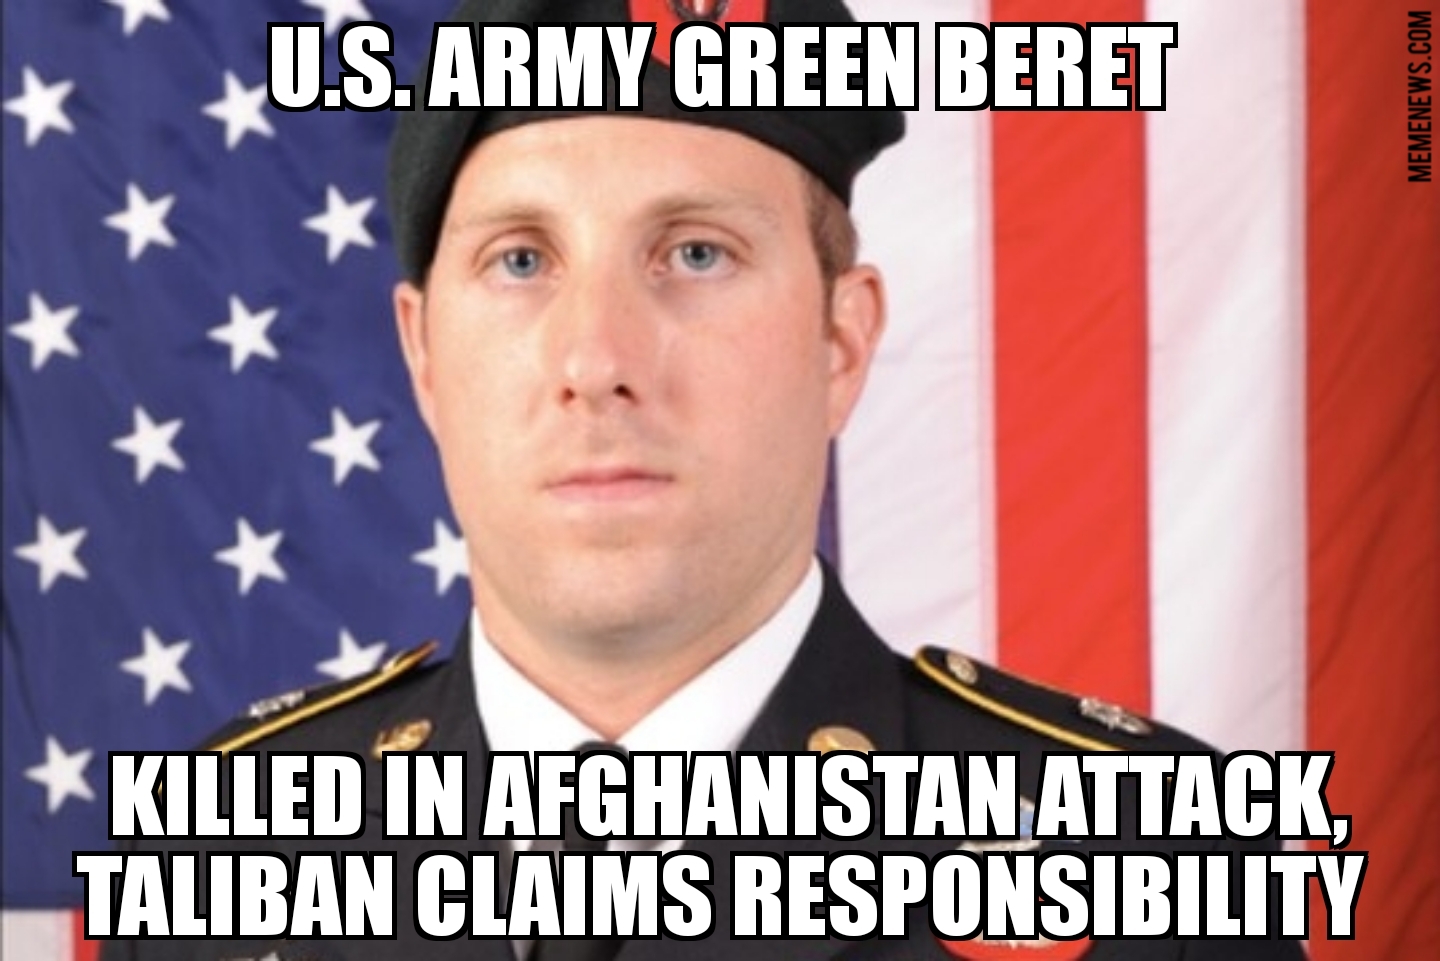 U.S. soldier killed in Afghanistan